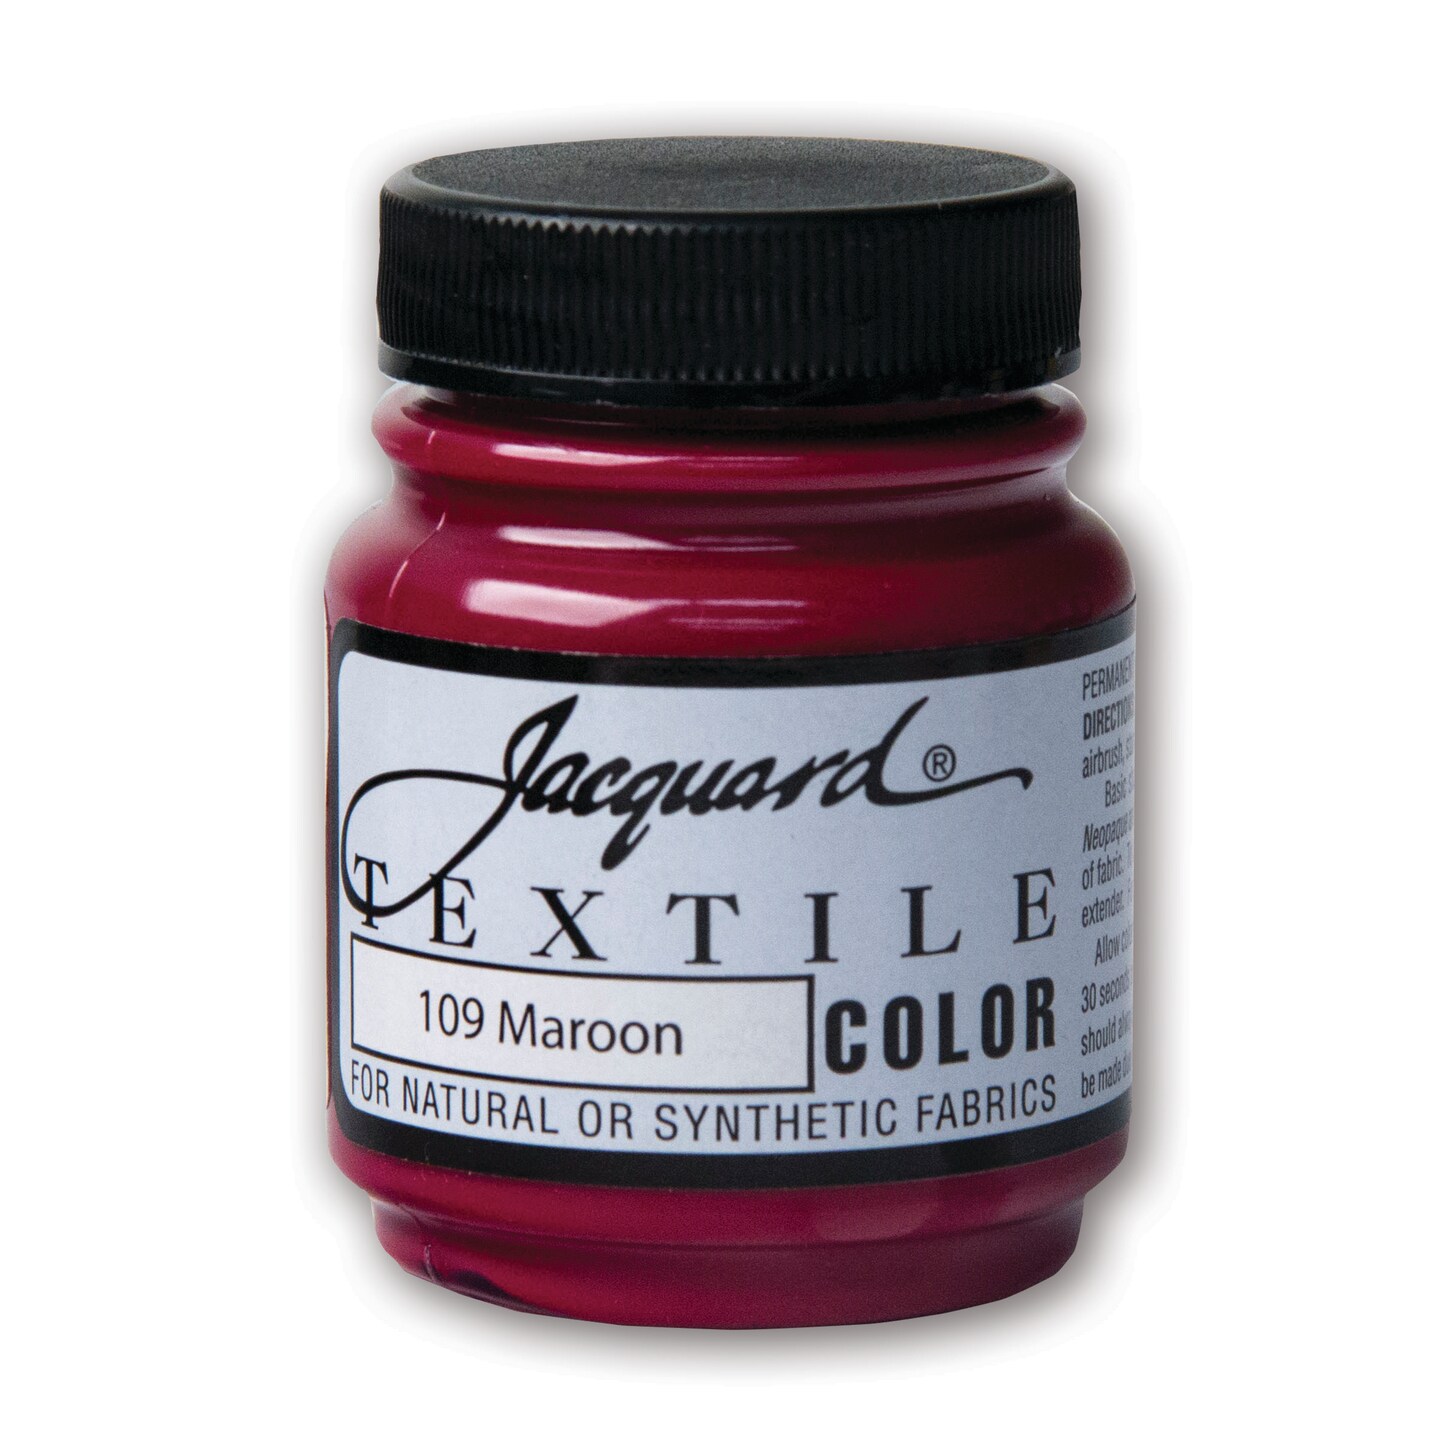 Jacquard Textile Color, 2.25 oz., Maroon